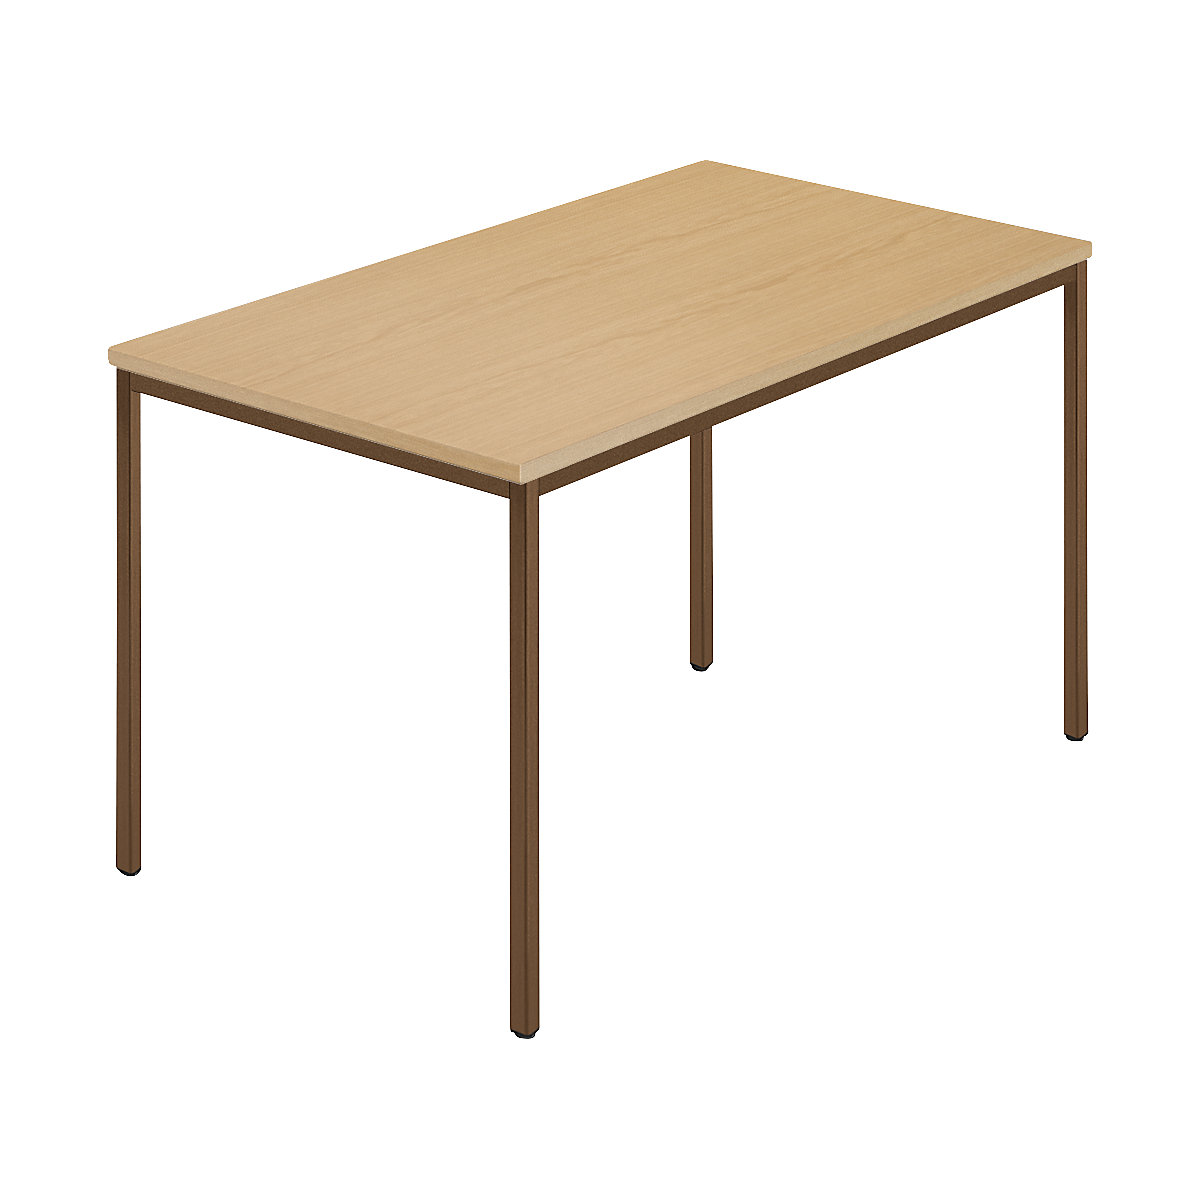 Rectangular table, coated rectangular tubing, WxD 1200 x 800 mm, beech natural / brown-8